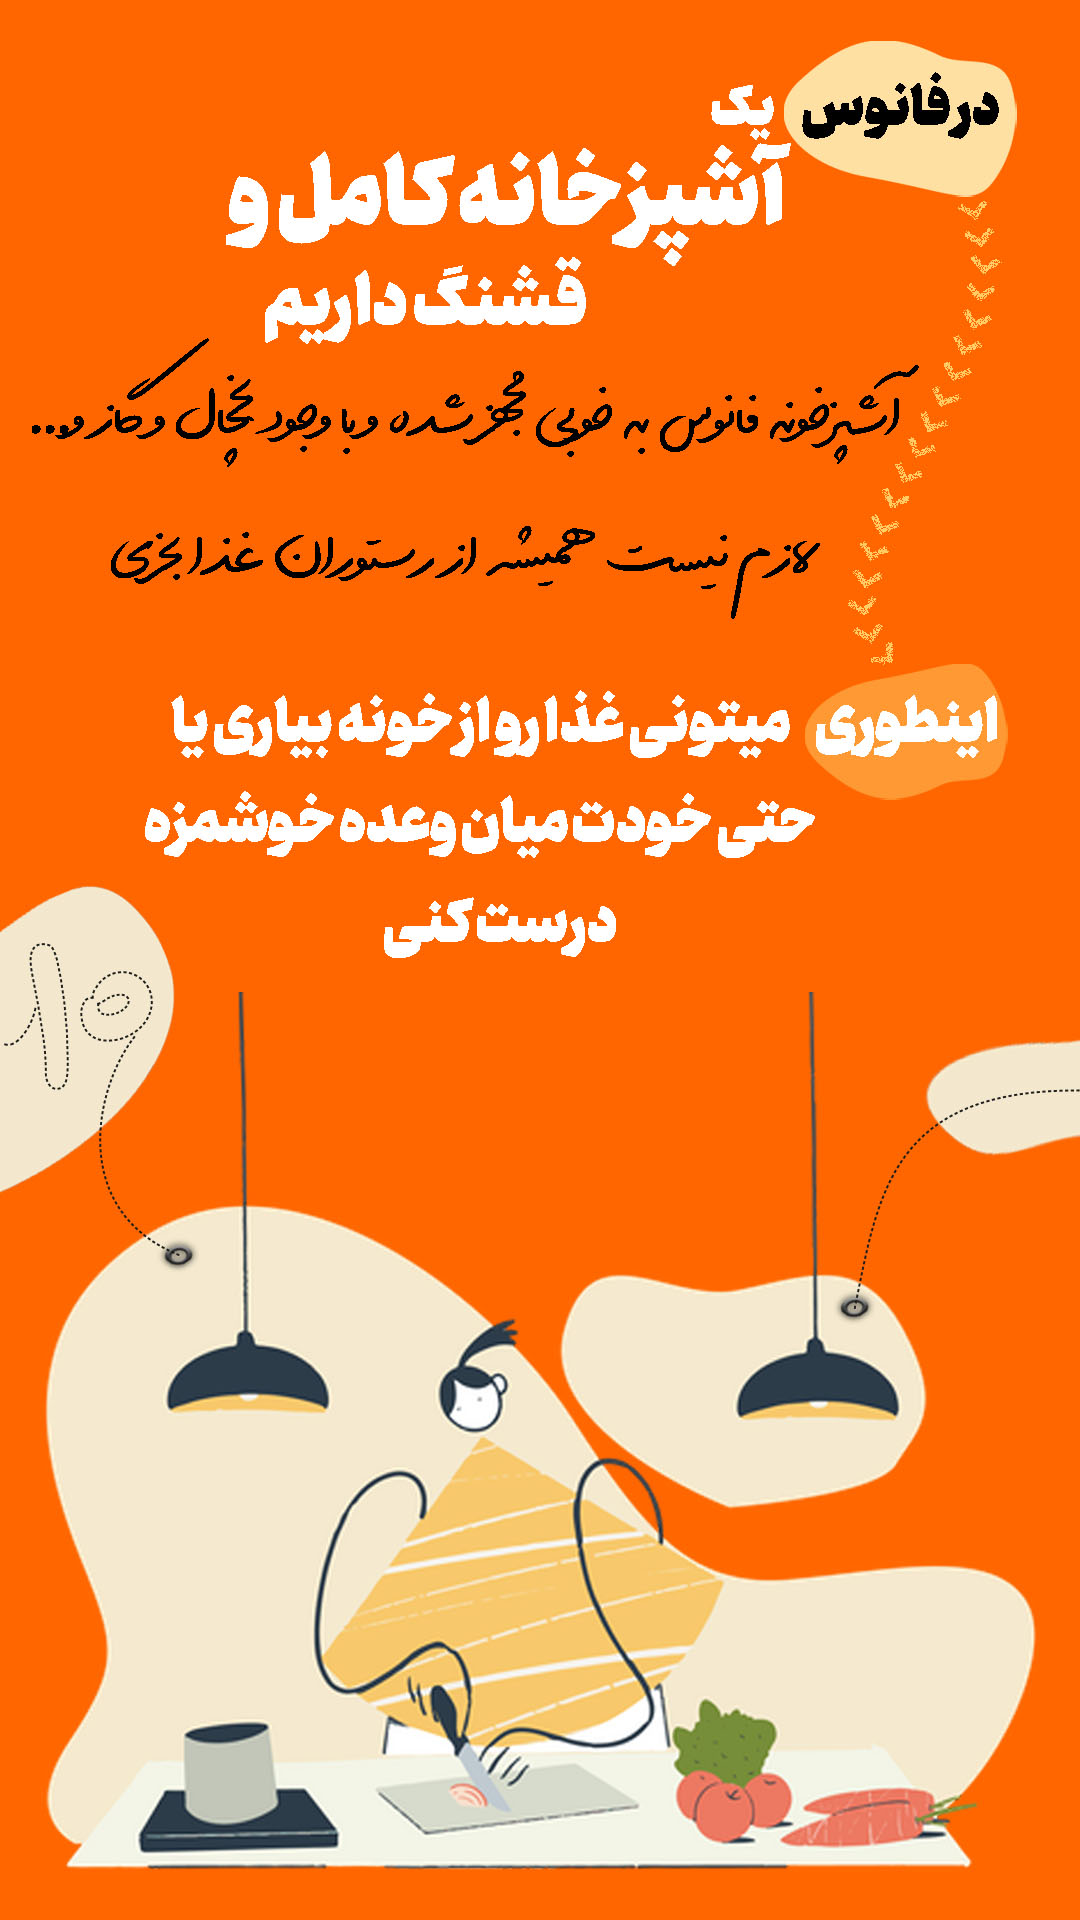 معرفی کمپ مطالعاتی شیراز10